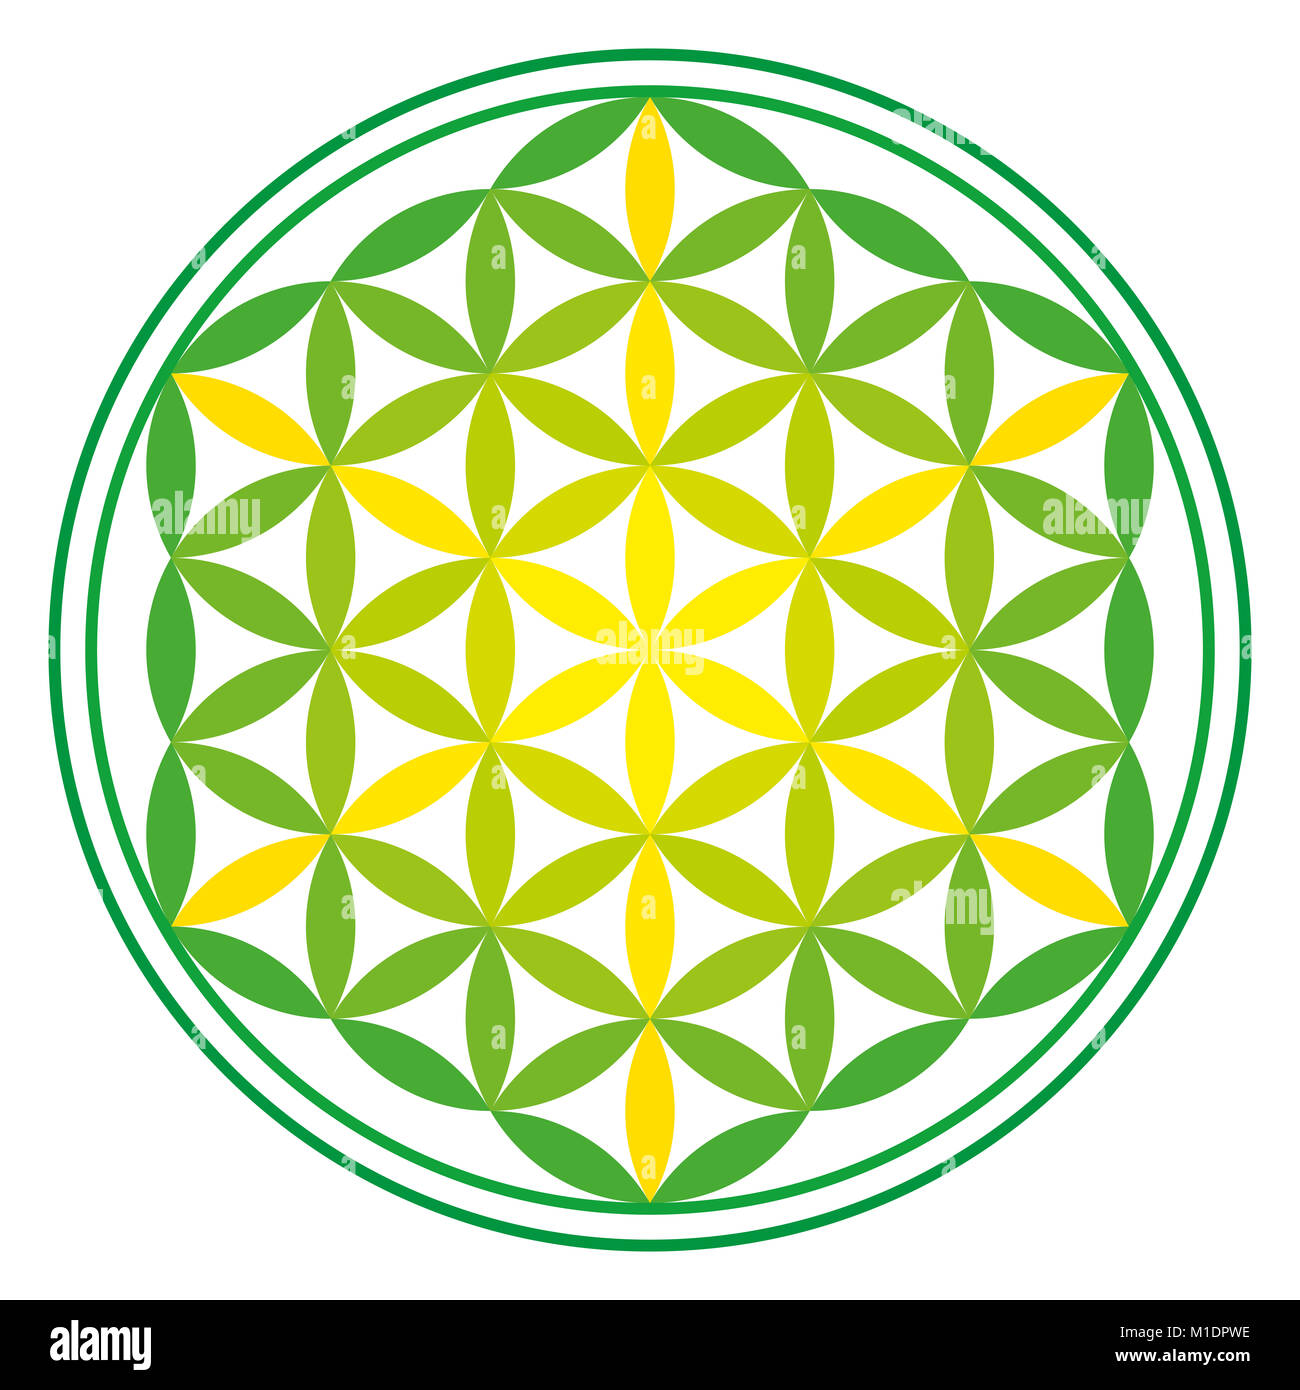 Energia verde fiore della vita su bianco. Antico simbolo simmetrico, composto da una molteplicità di cerchi sovrapposti formando un fiore come modello. Foto Stock